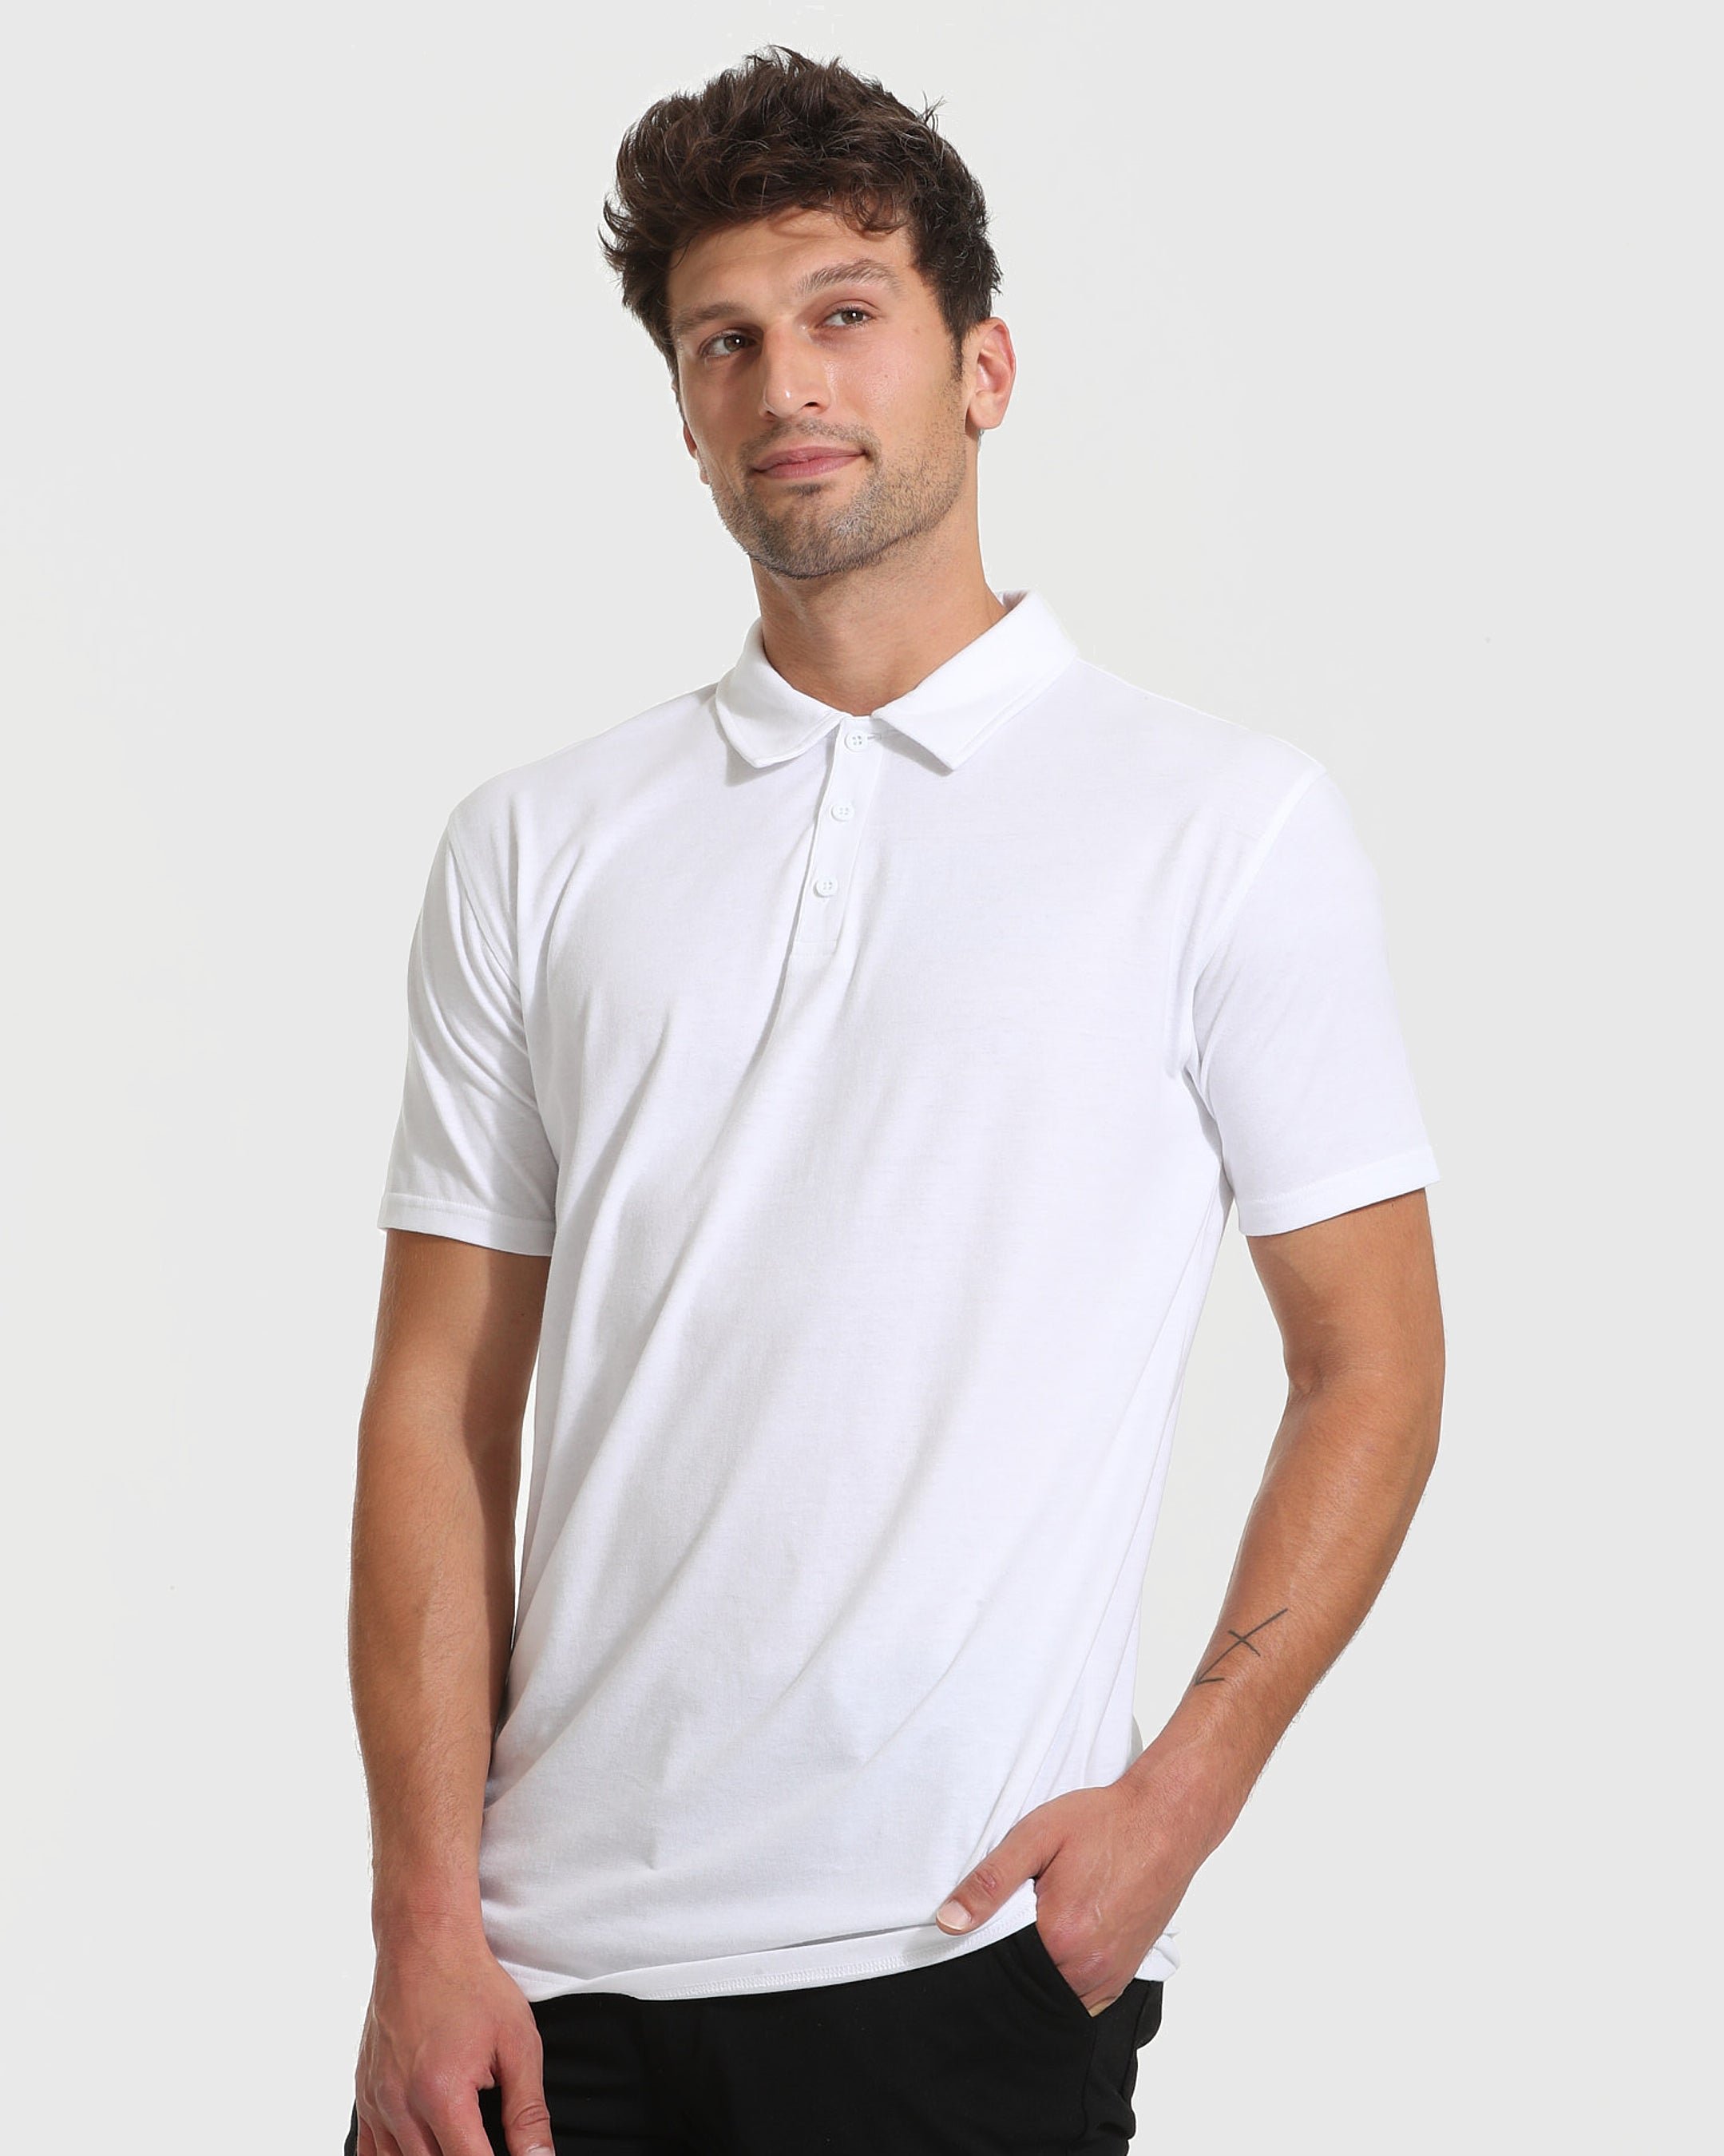 White Tall Polo Shirt